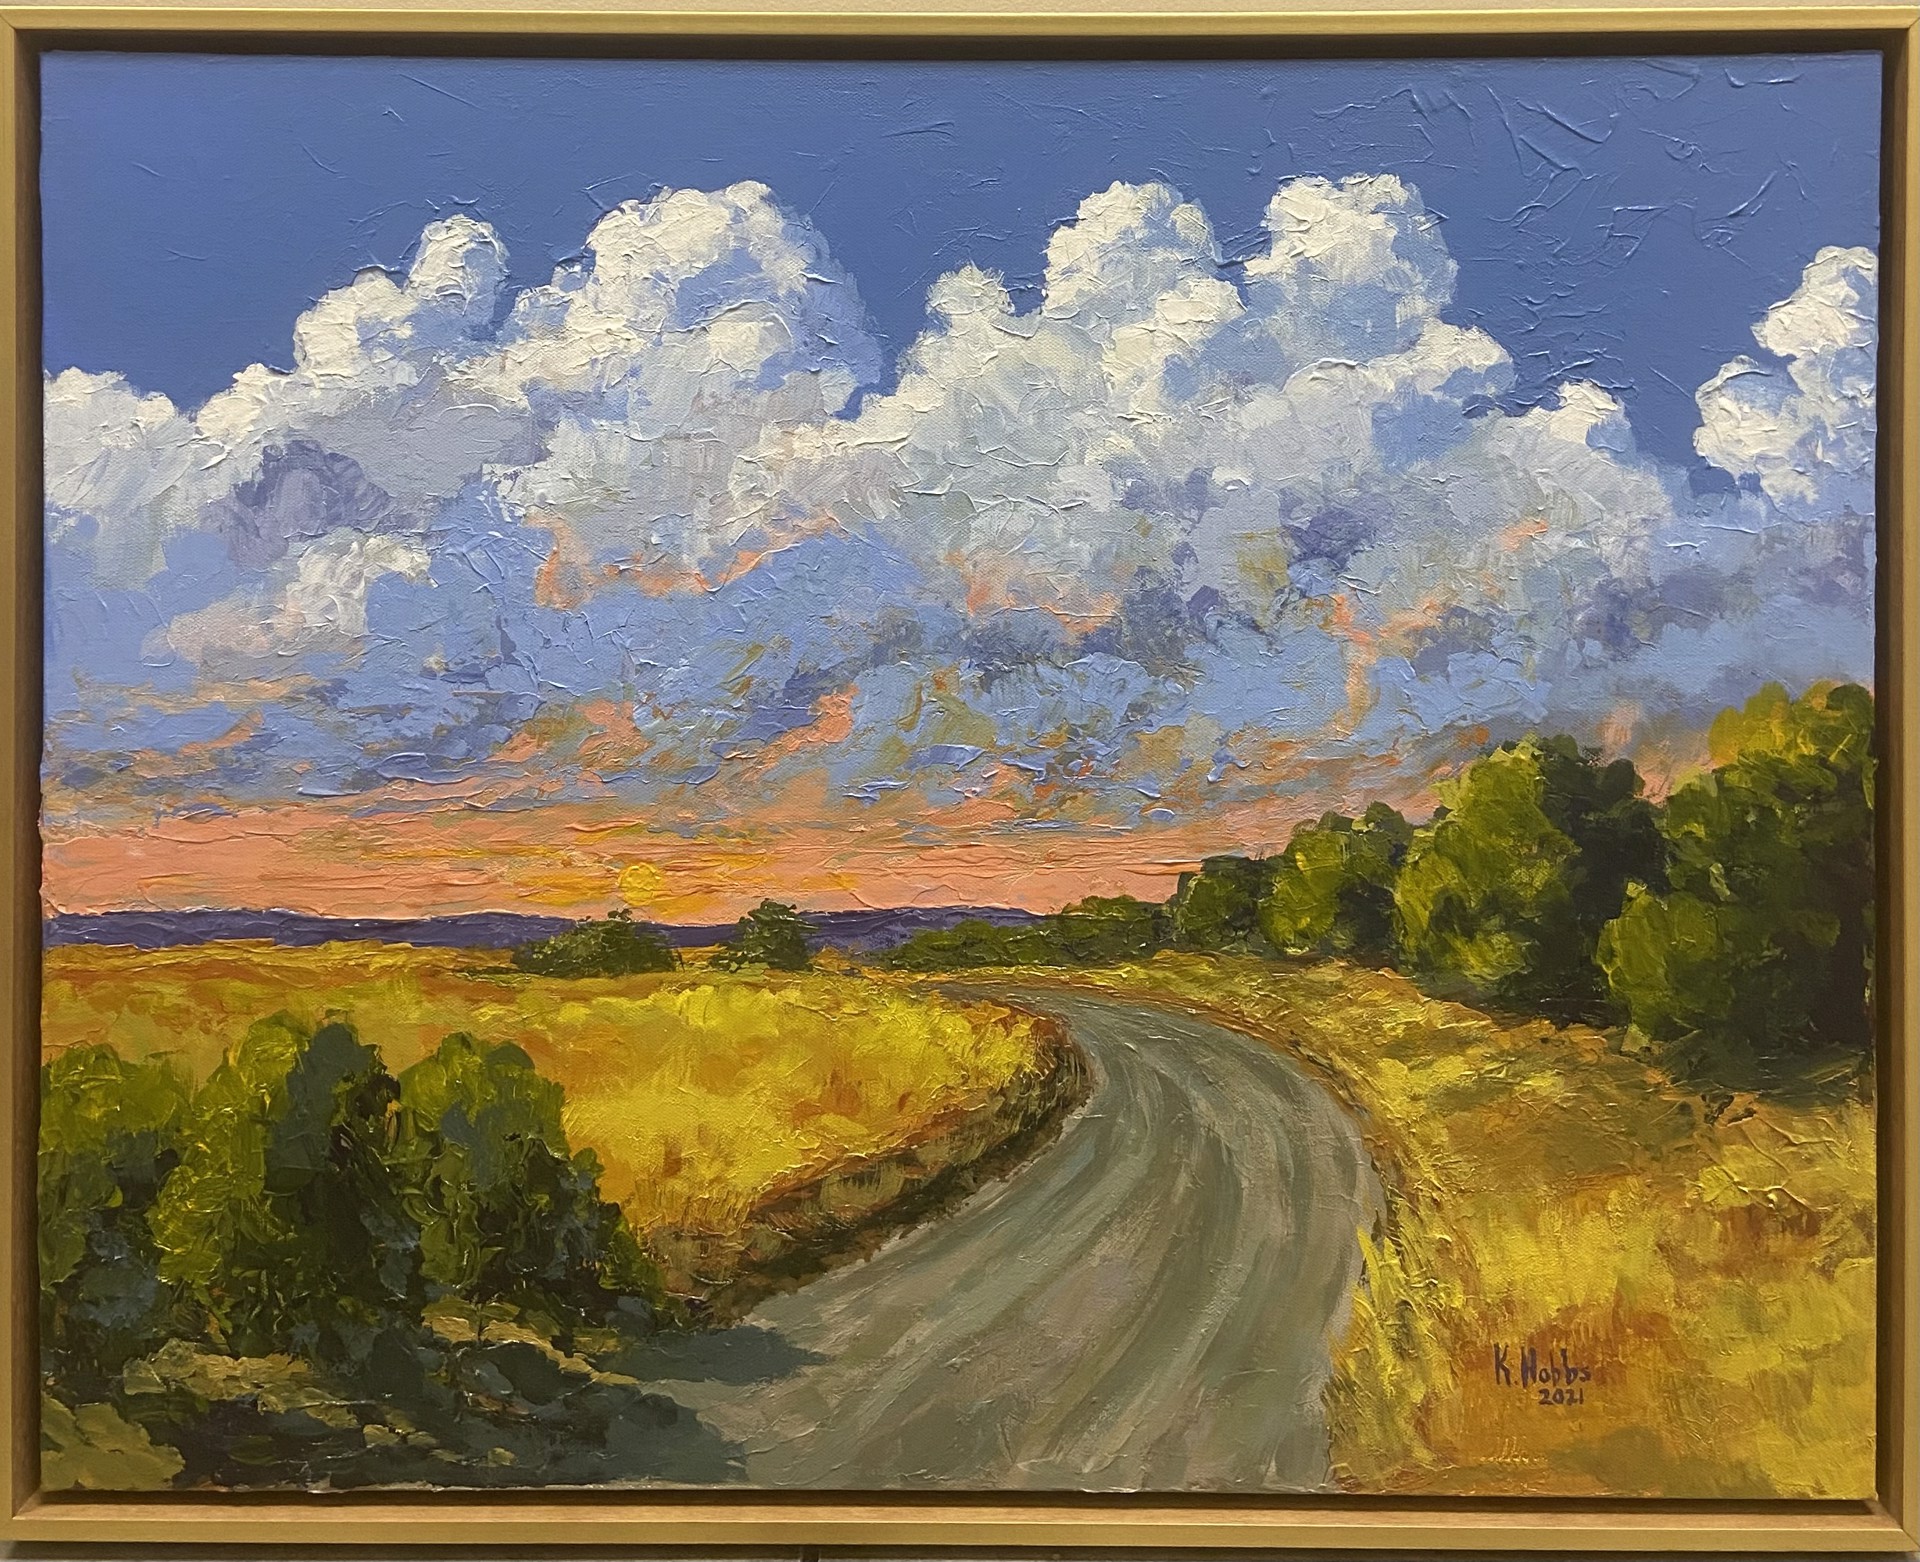 Prairie Road by Kevin Hobbs